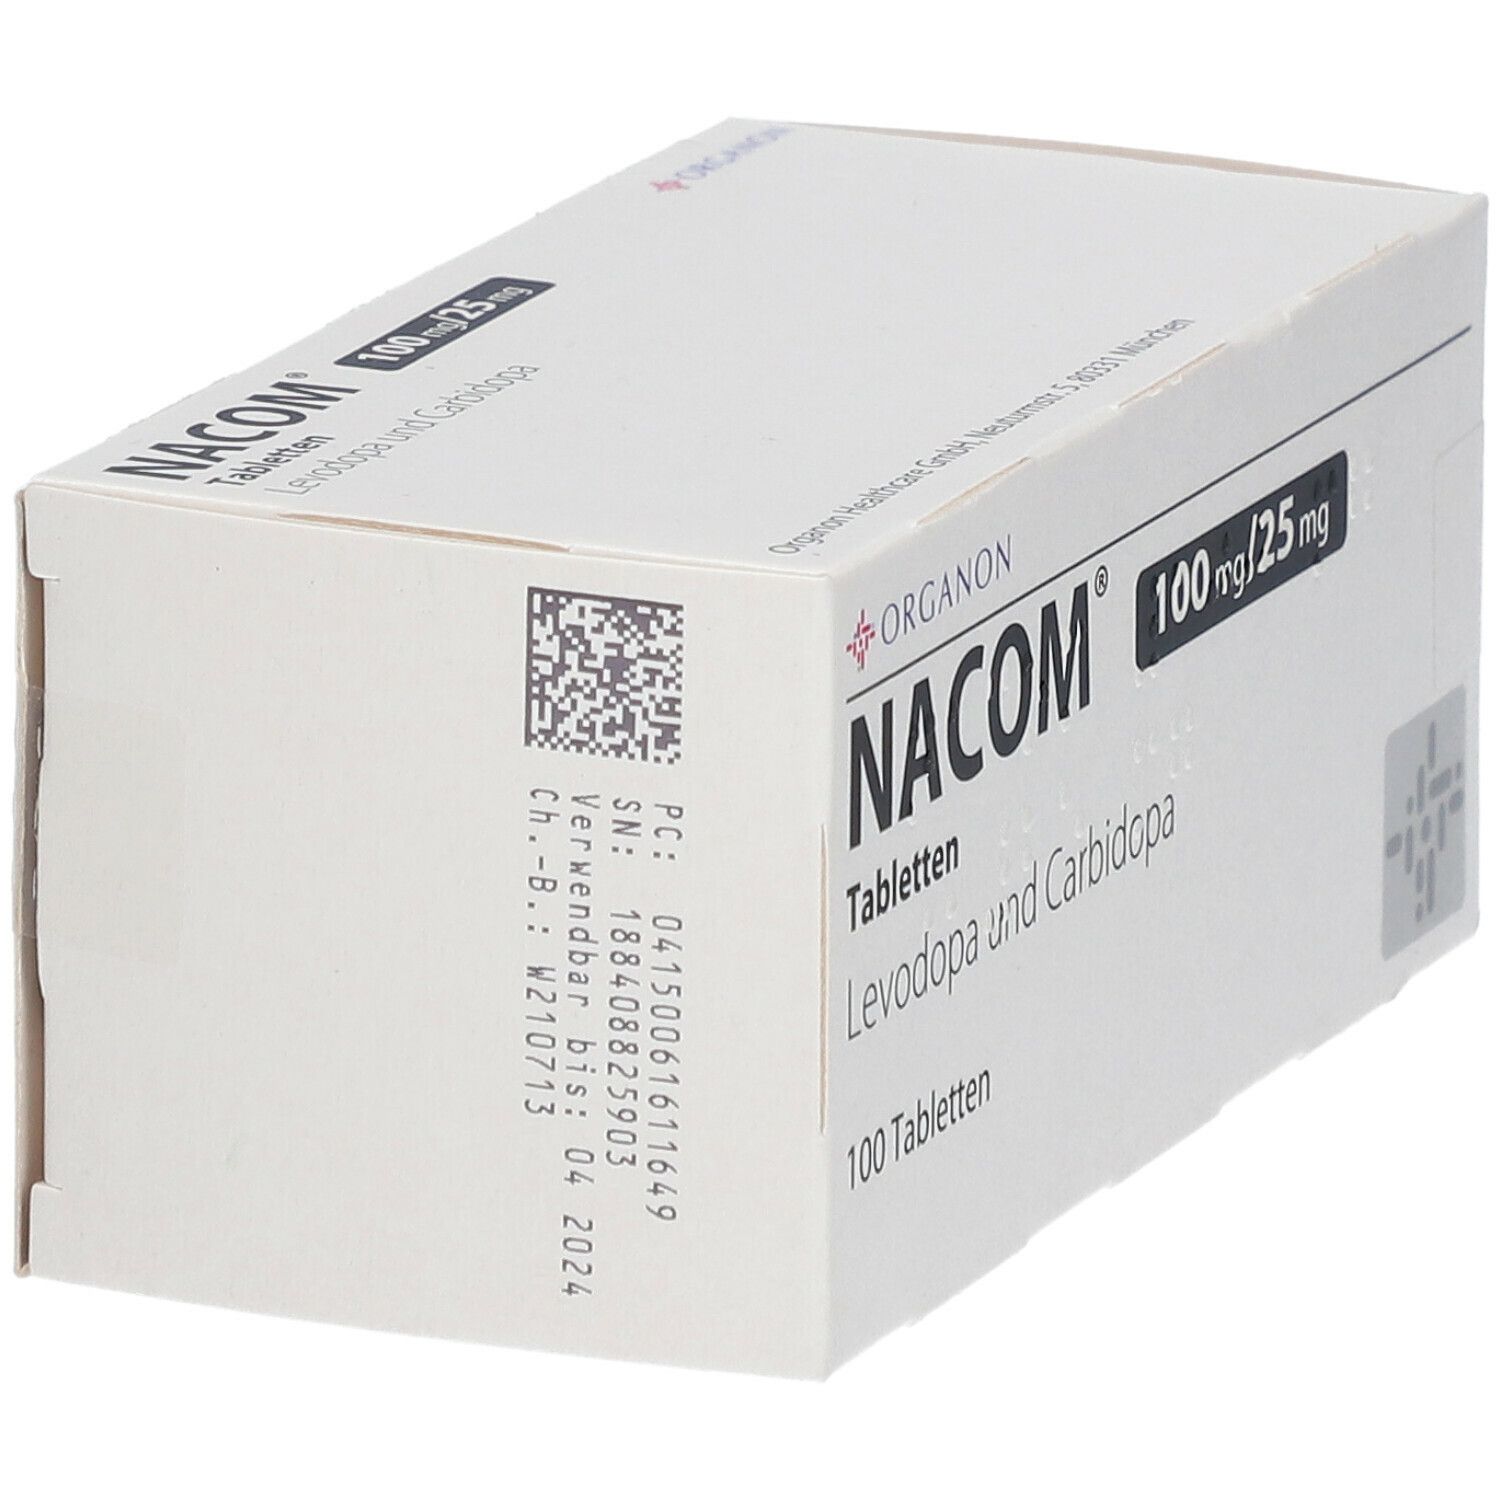 NACOM® 100 mg/25 mg